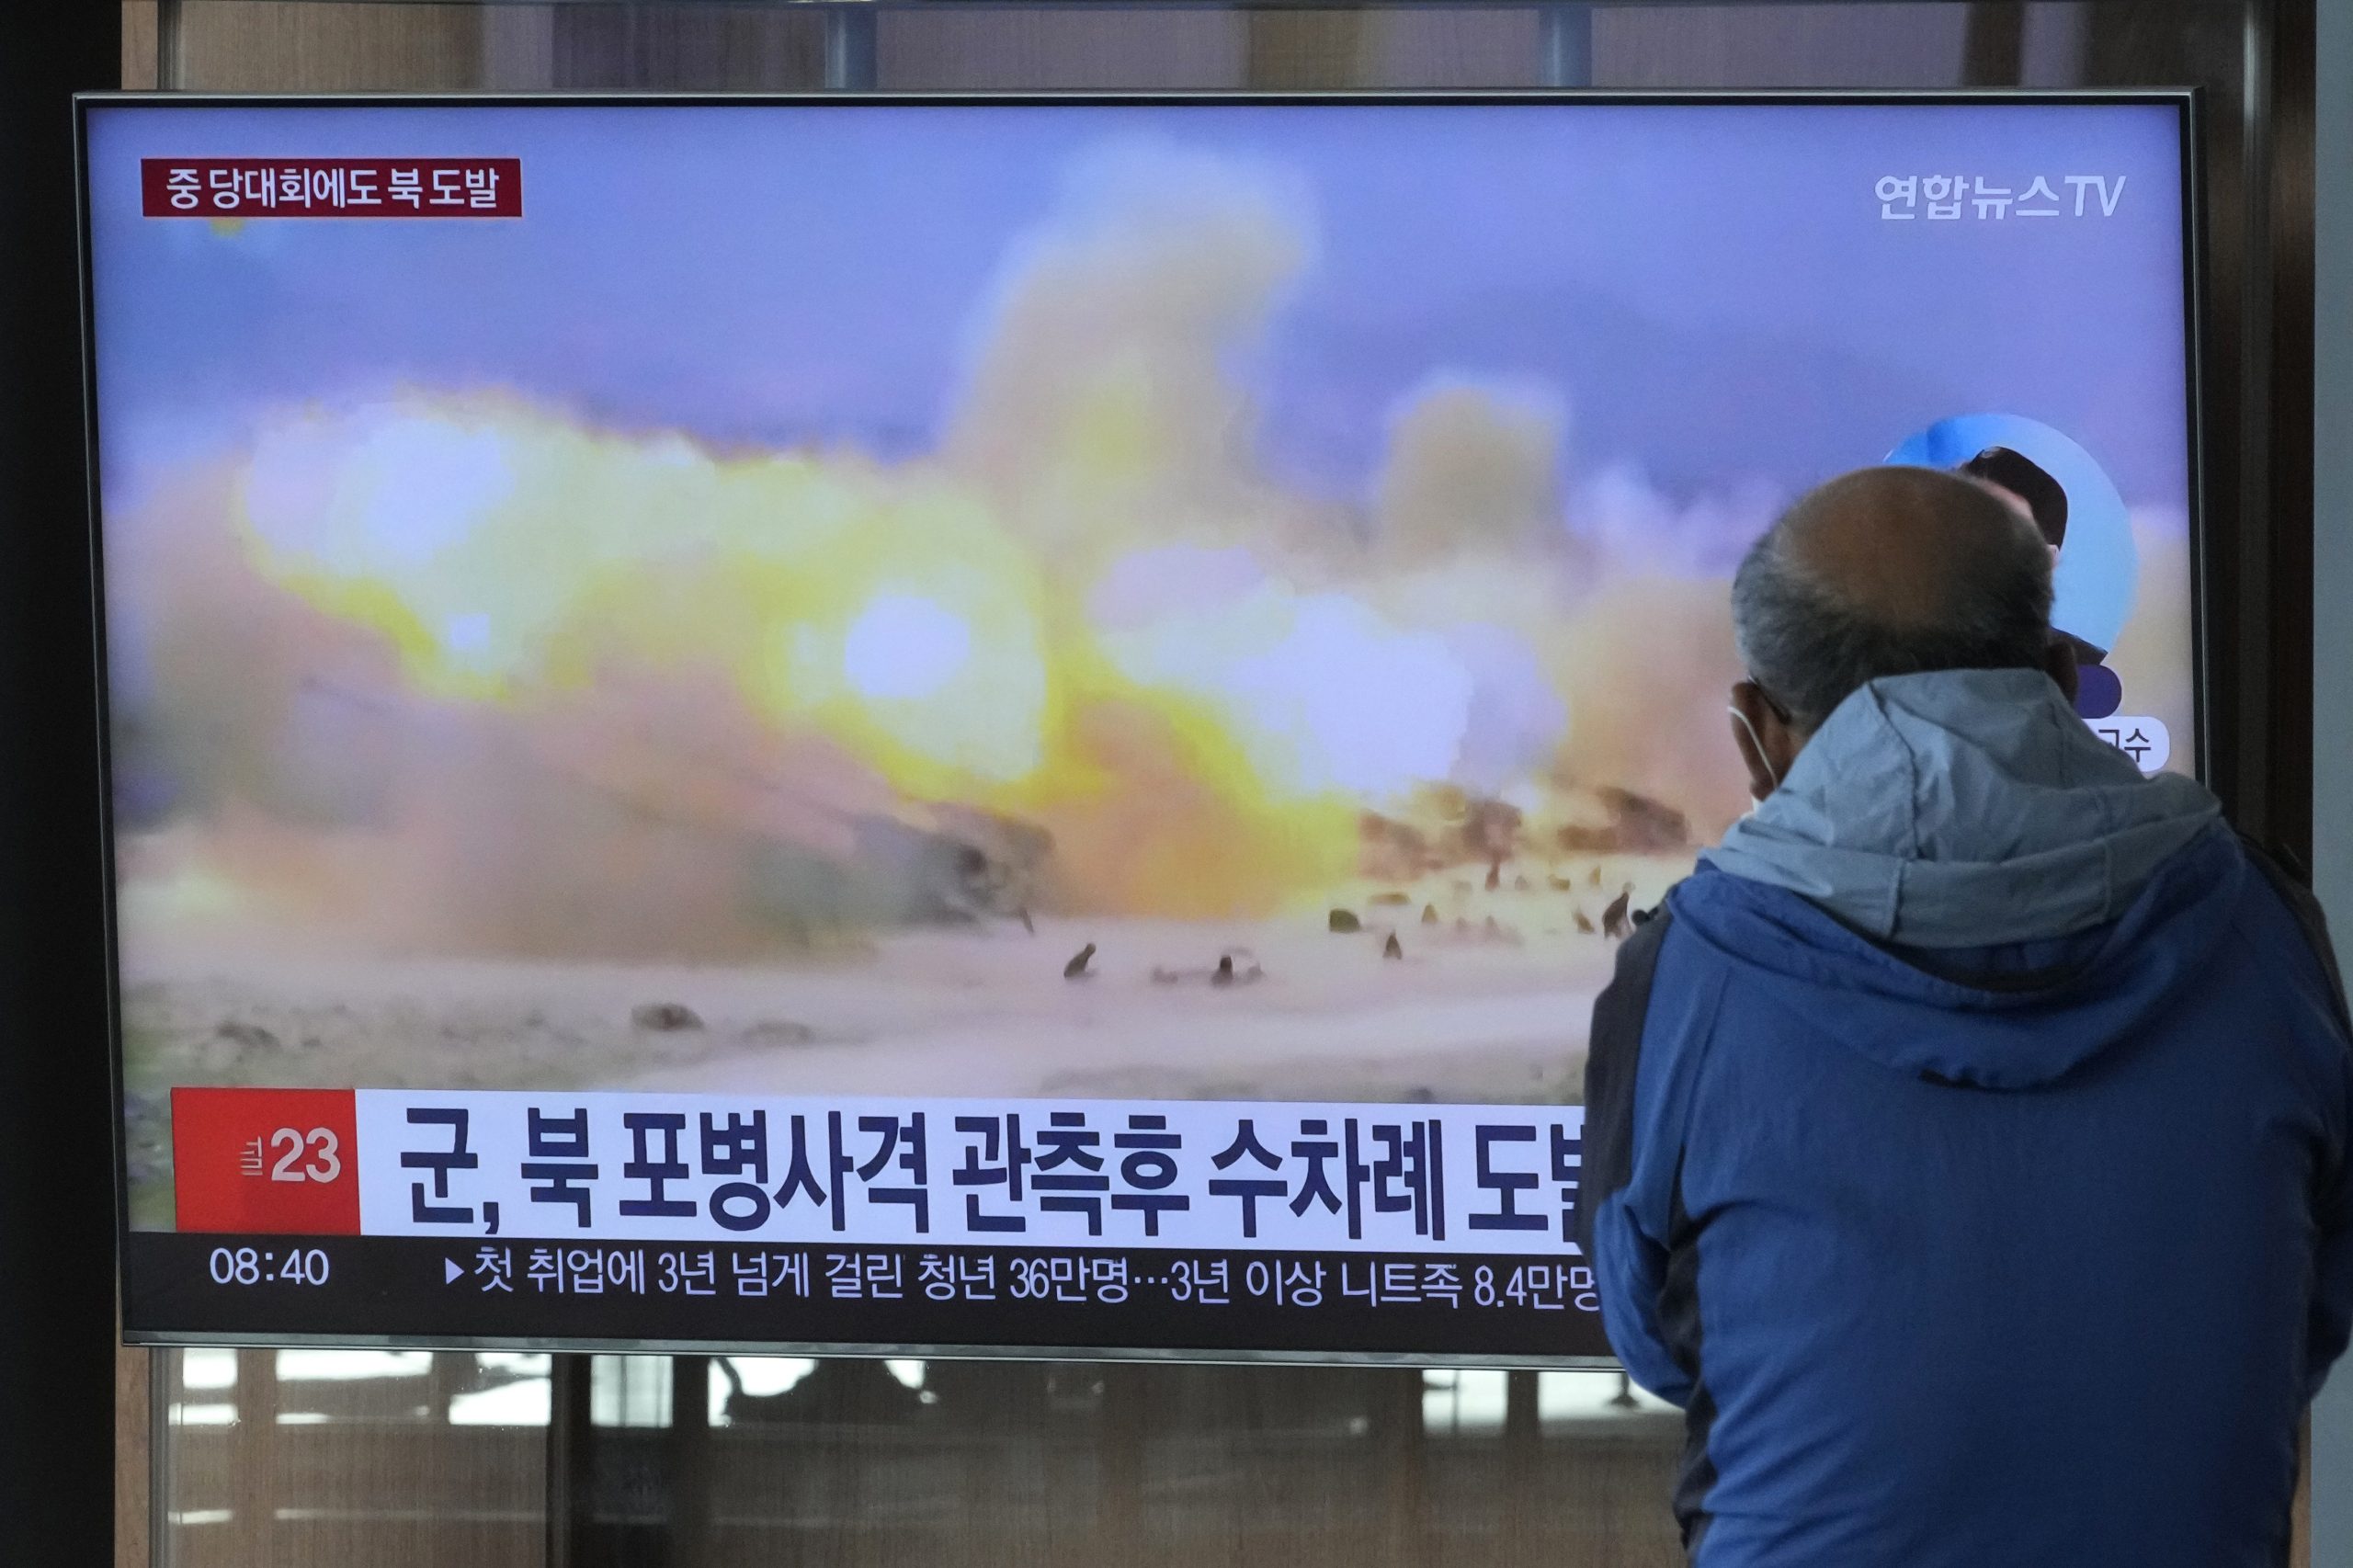 朝鲜再次违反军事协议 向东部套西部海域发射250多发炮弹 